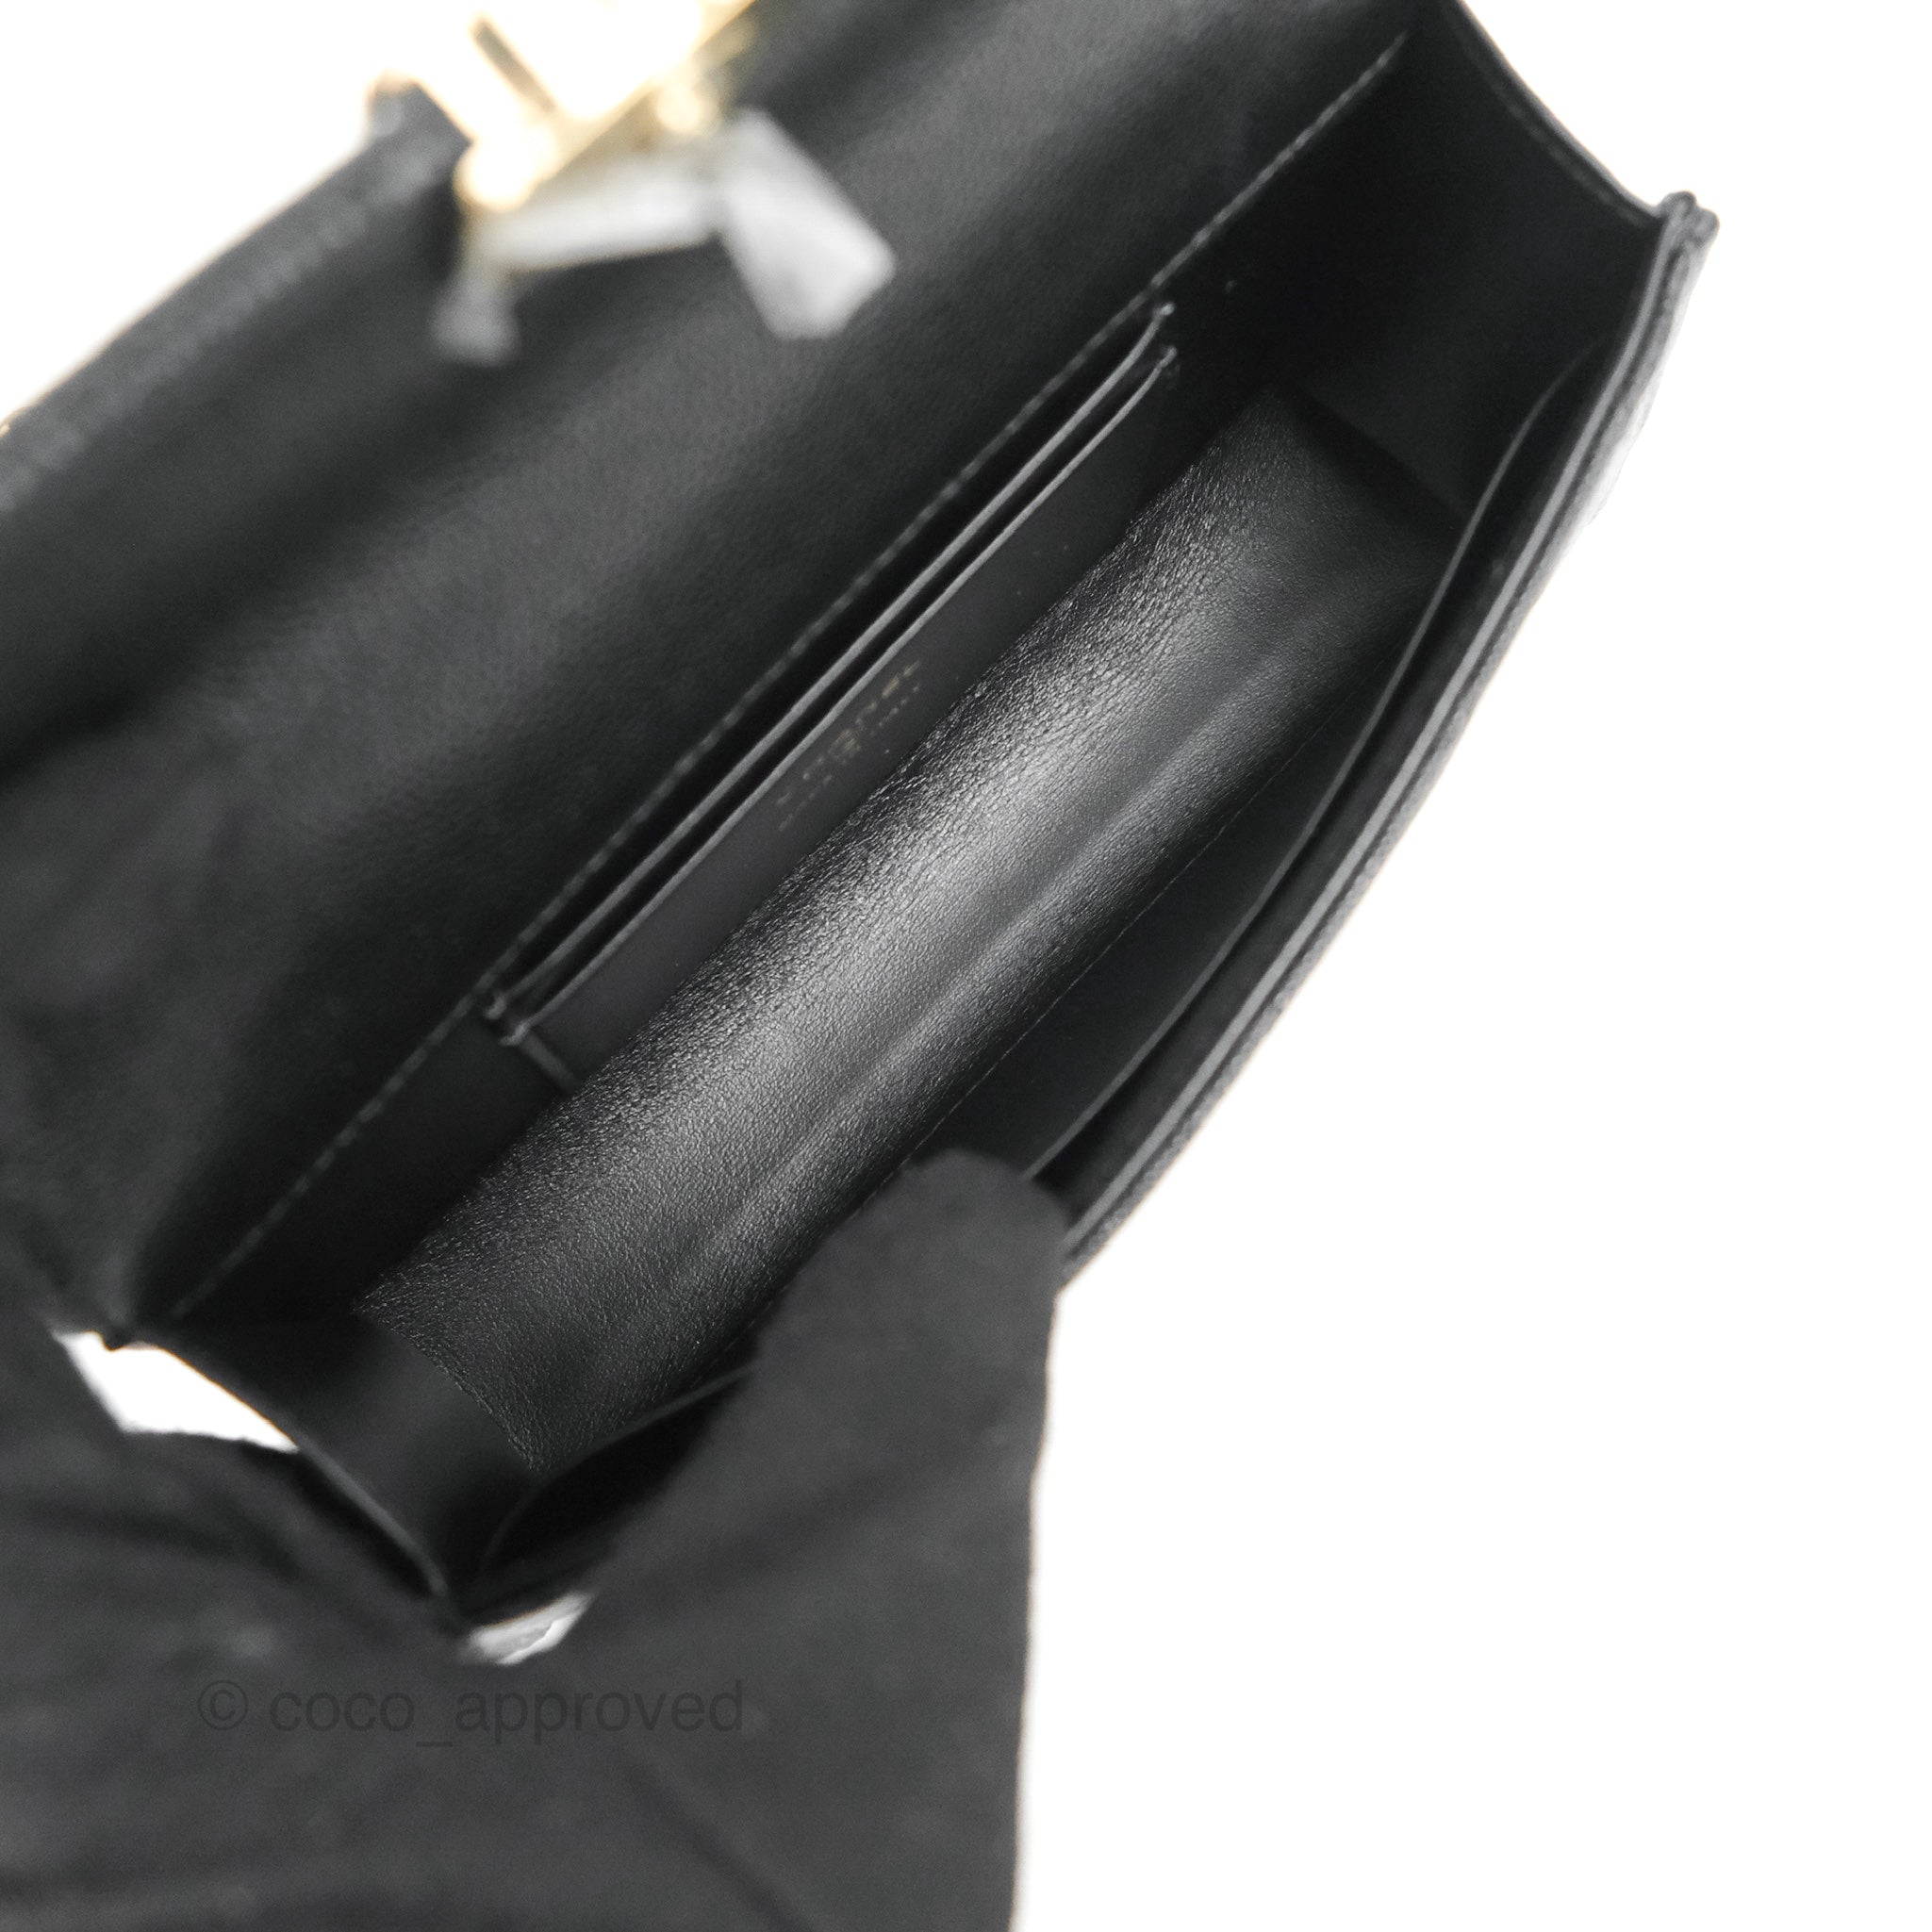 Chanel Black CC Pearl Flap Coin Purse w/Chain – The Closet